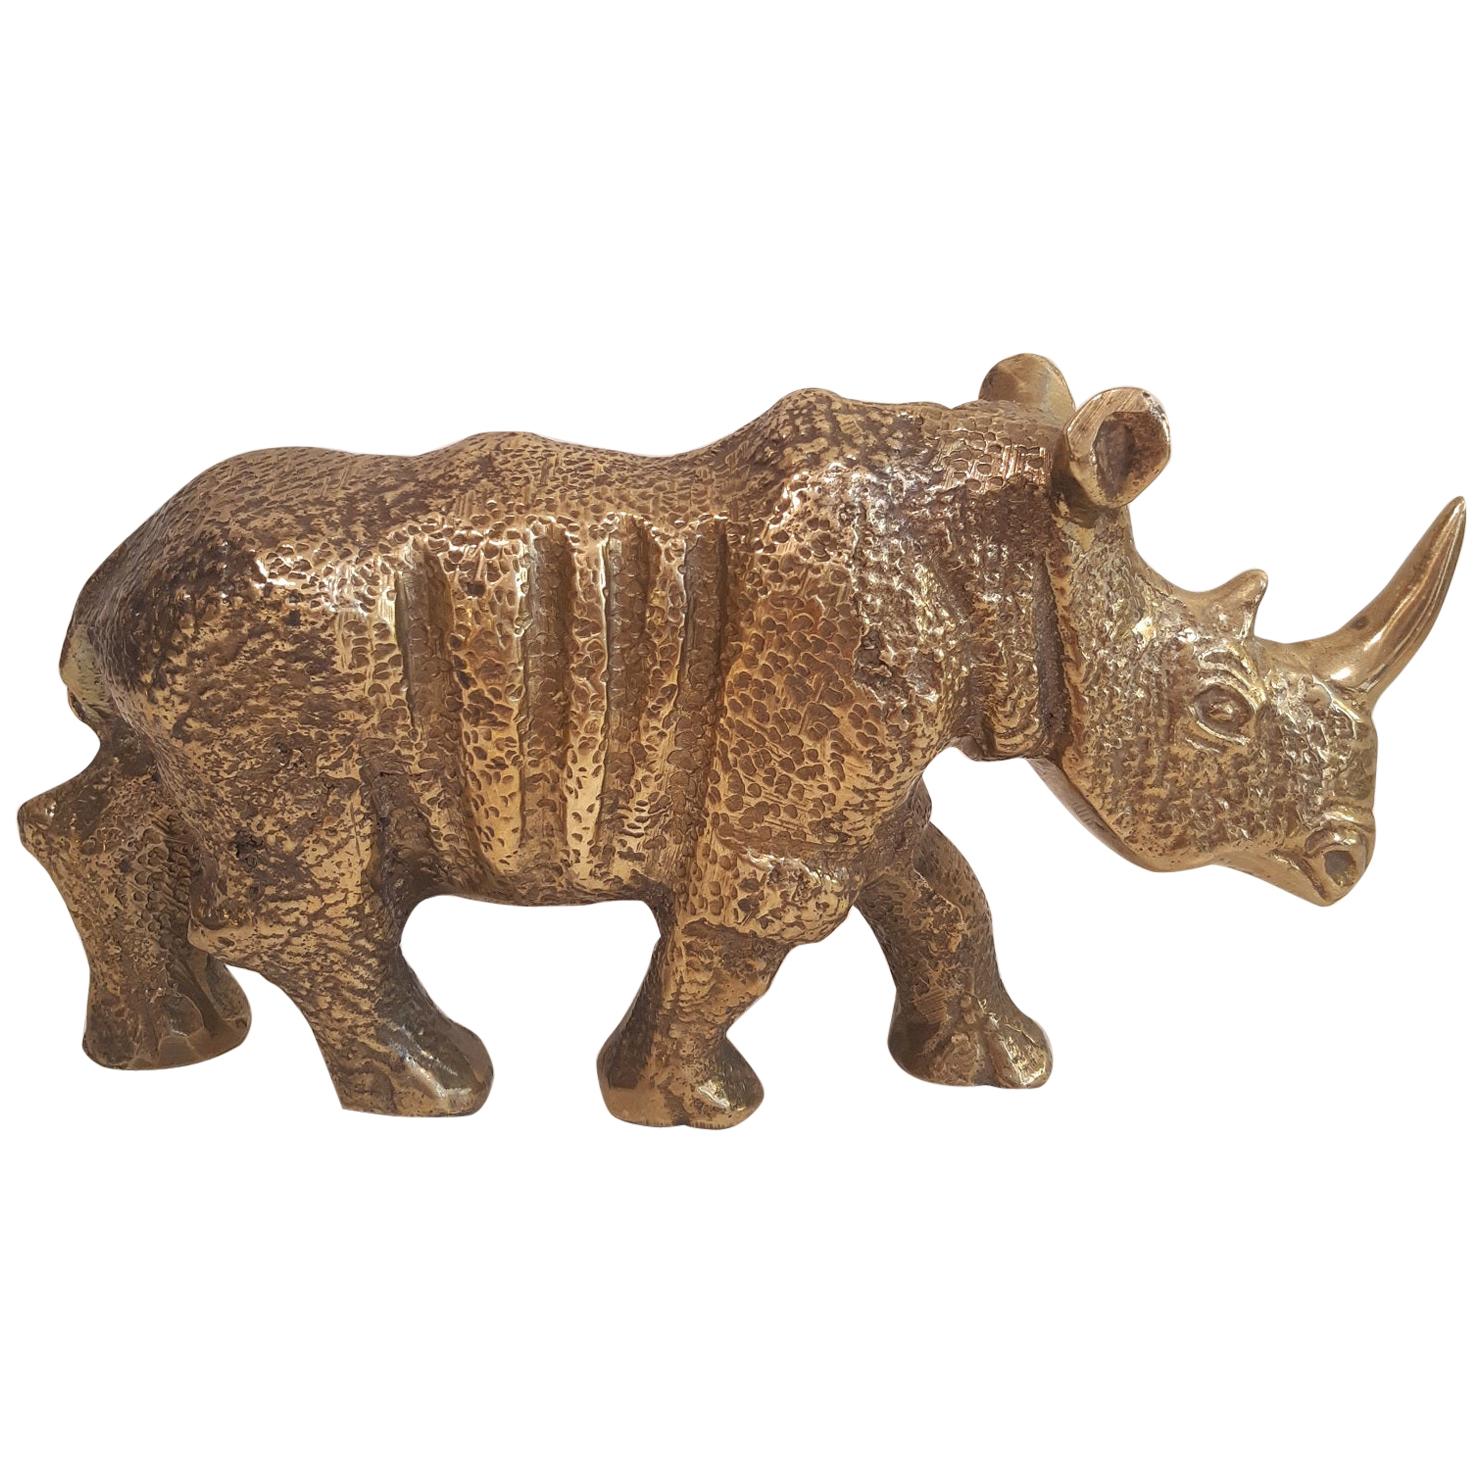 Brass Rhinoceros Figurine 1970s Mid-Century Modern Sculpture 